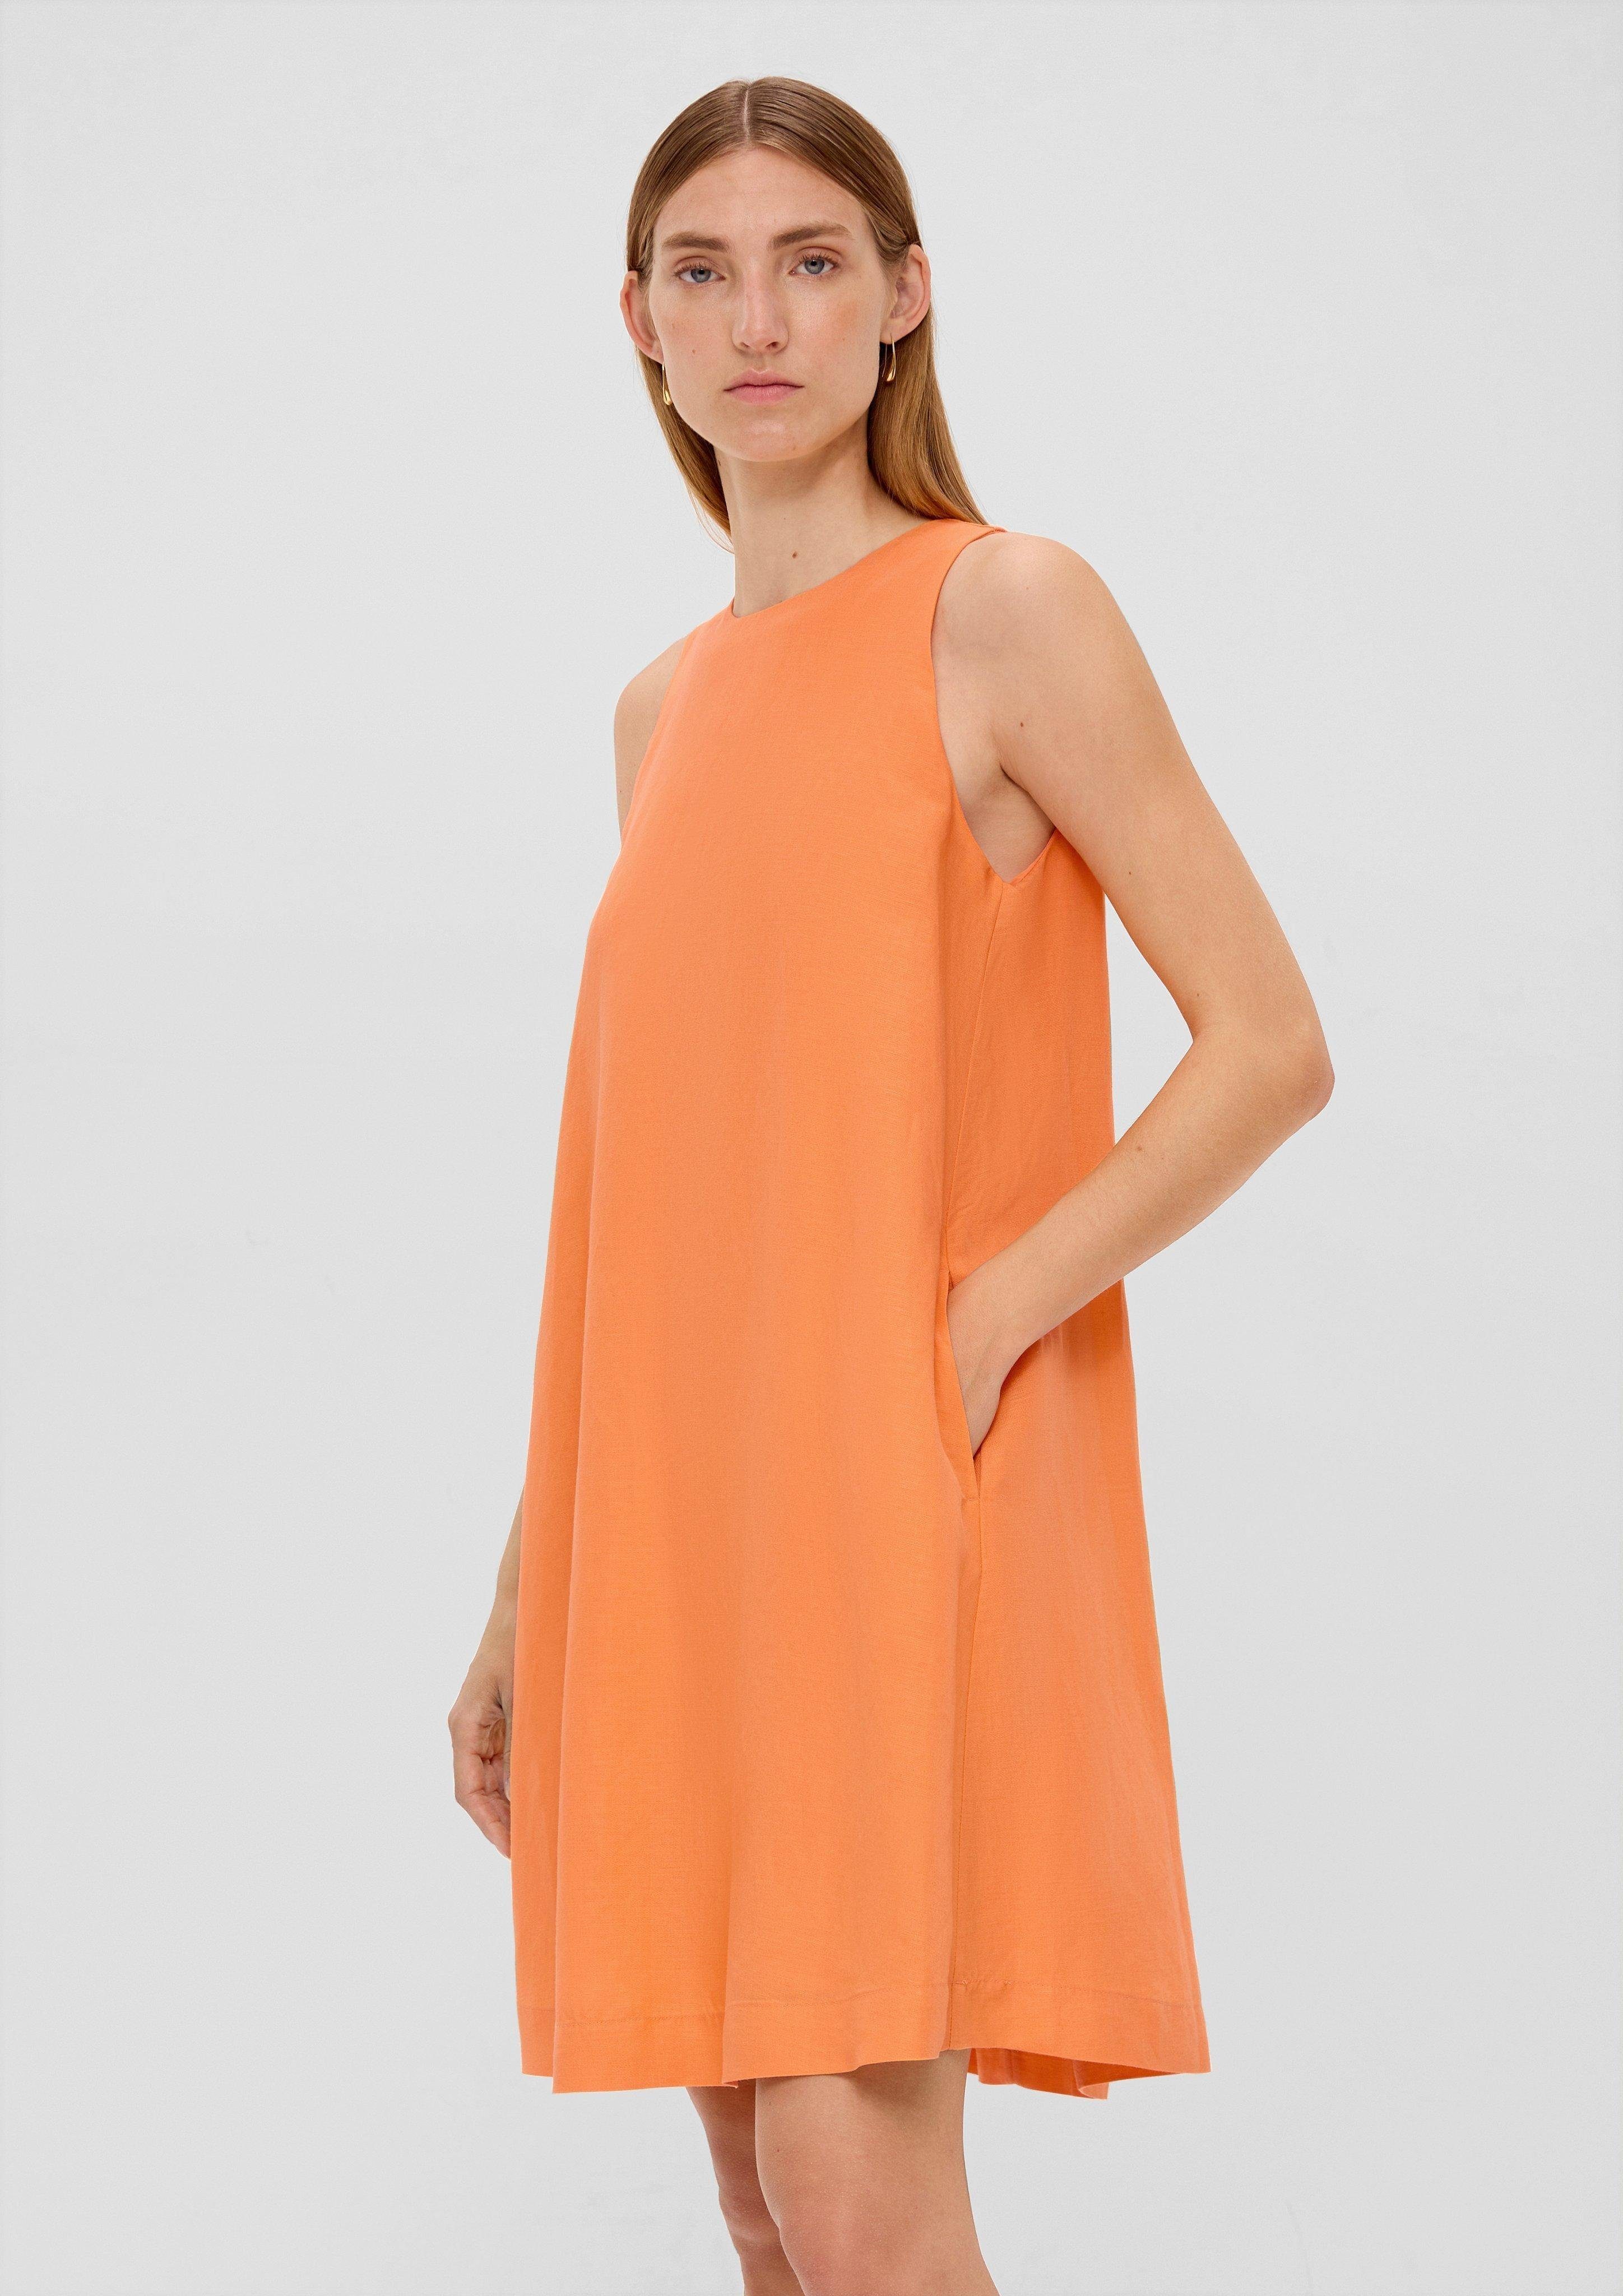 LABEL aus s.Oliver Leinen Viskose orange BLACK Kleid Minikleid und